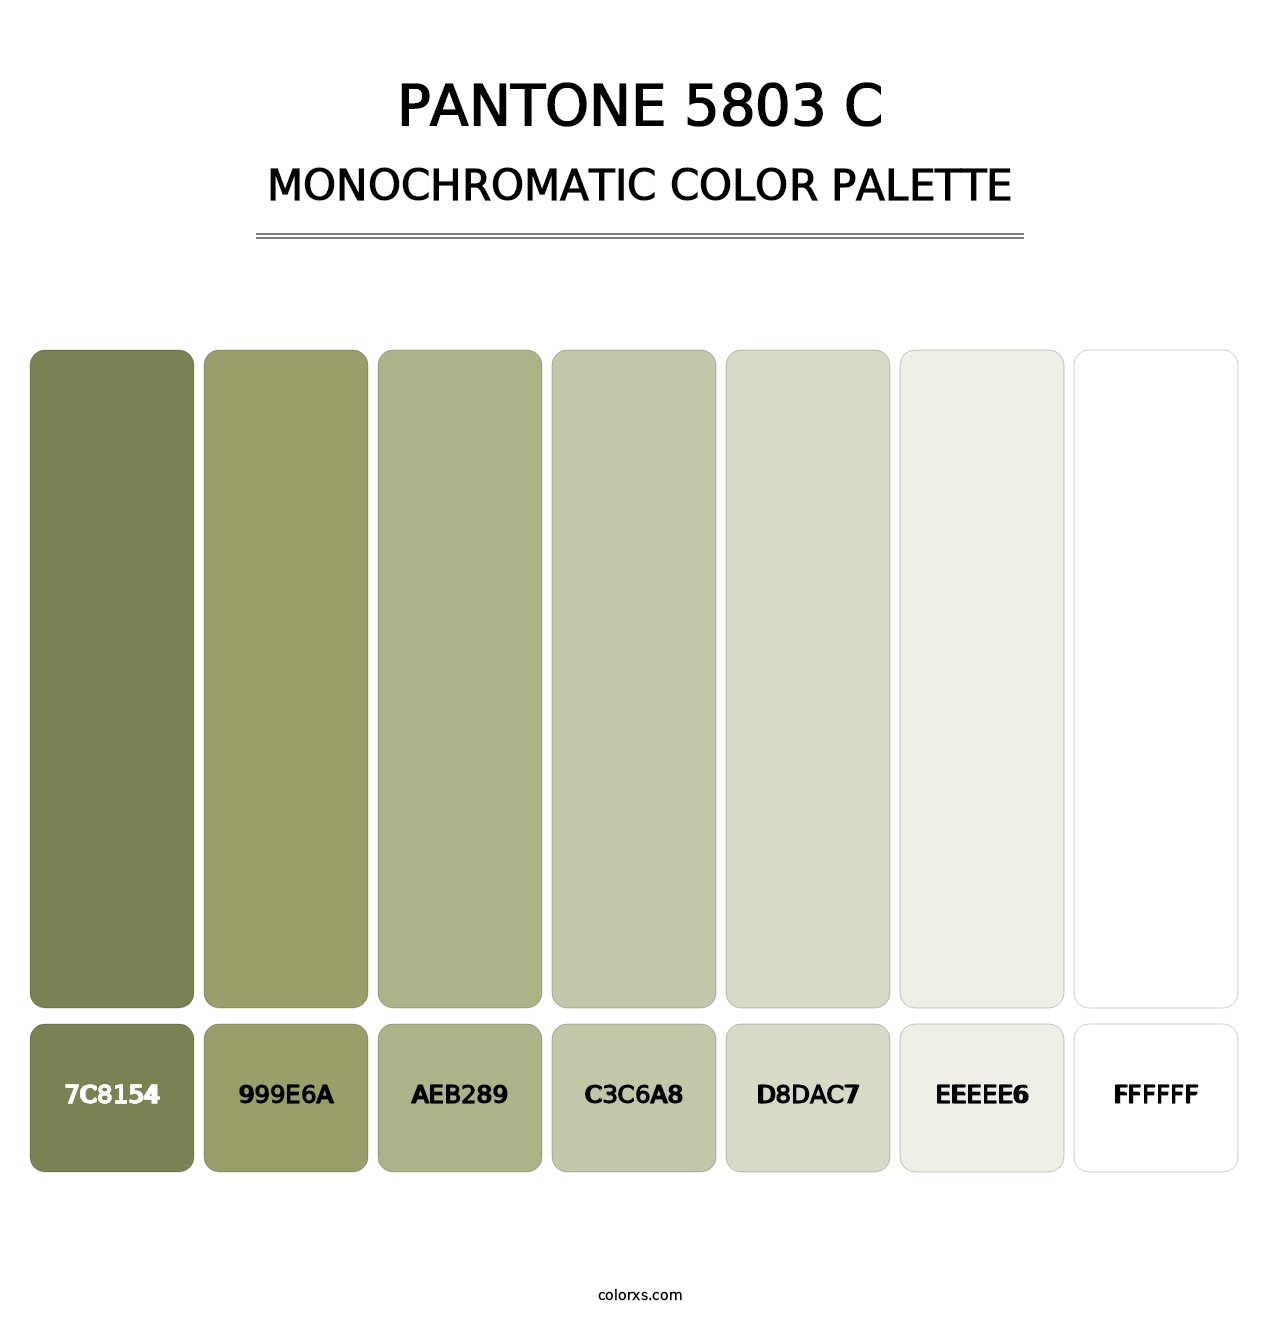 PANTONE 5803 C - Monochromatic Color Palette